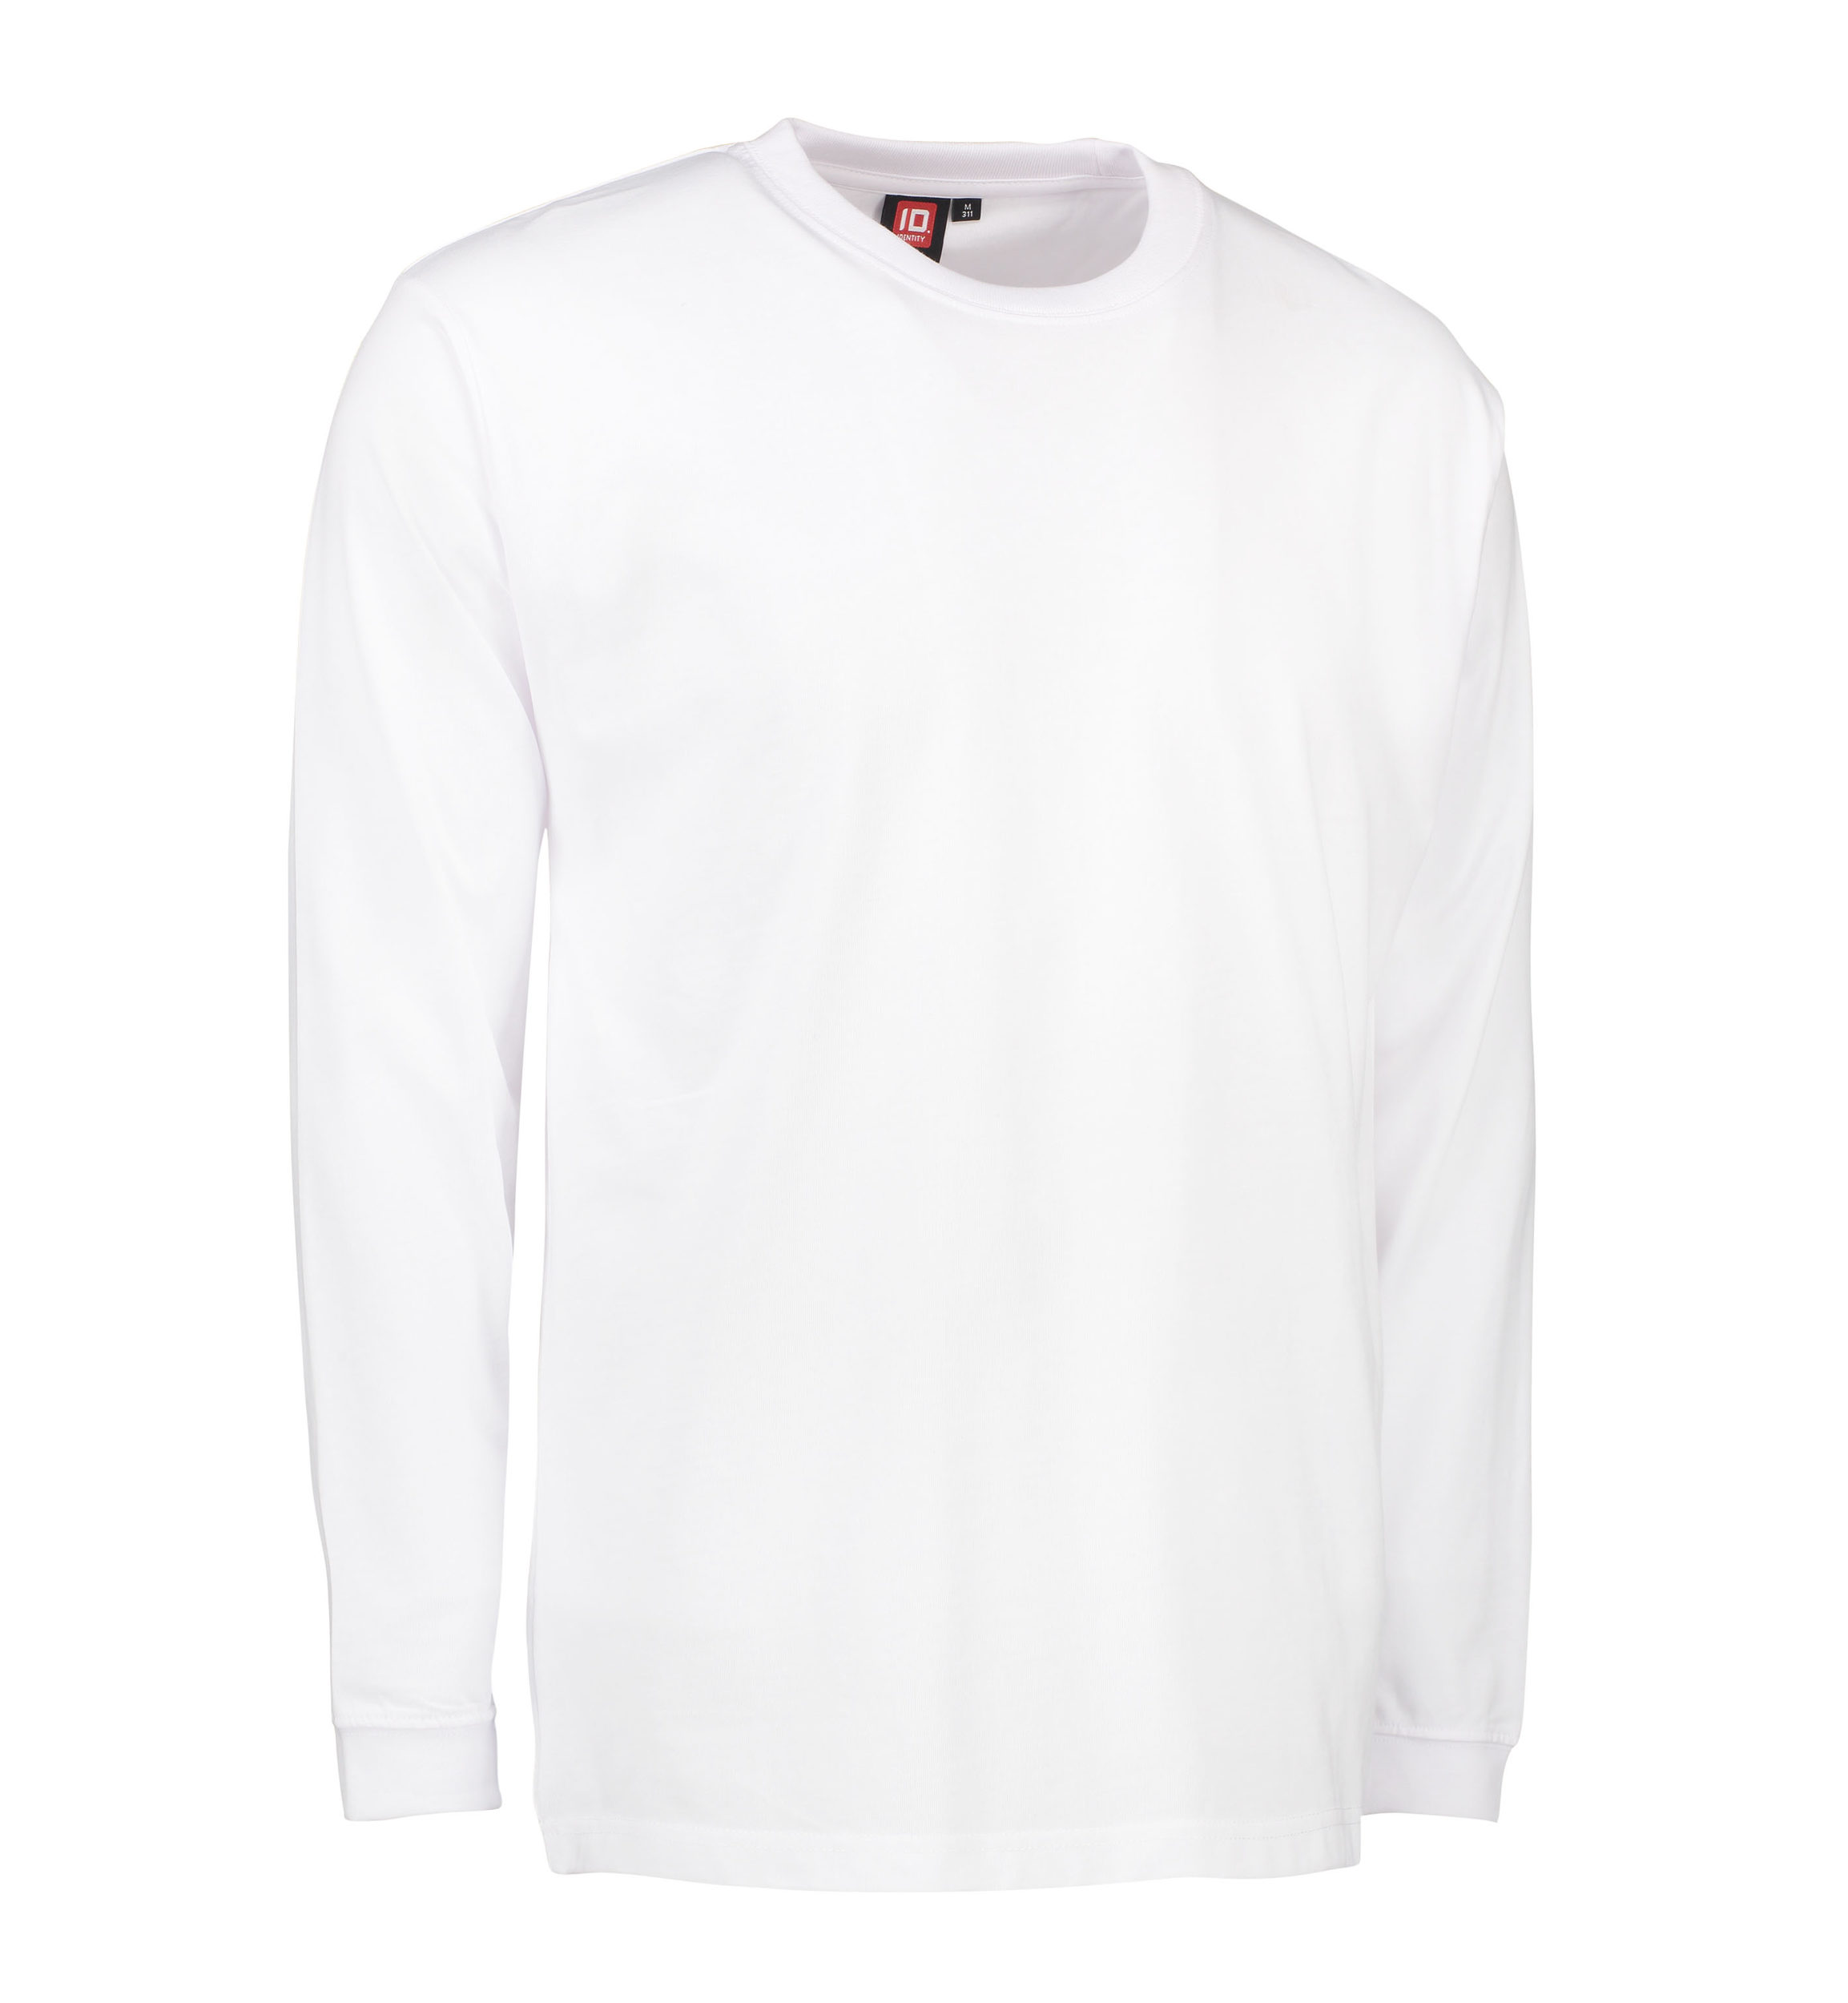 Billede af Slidstærk langærmet t-shirt til mænd i hvid - 3XL hos Sygeplejebutikken.dk